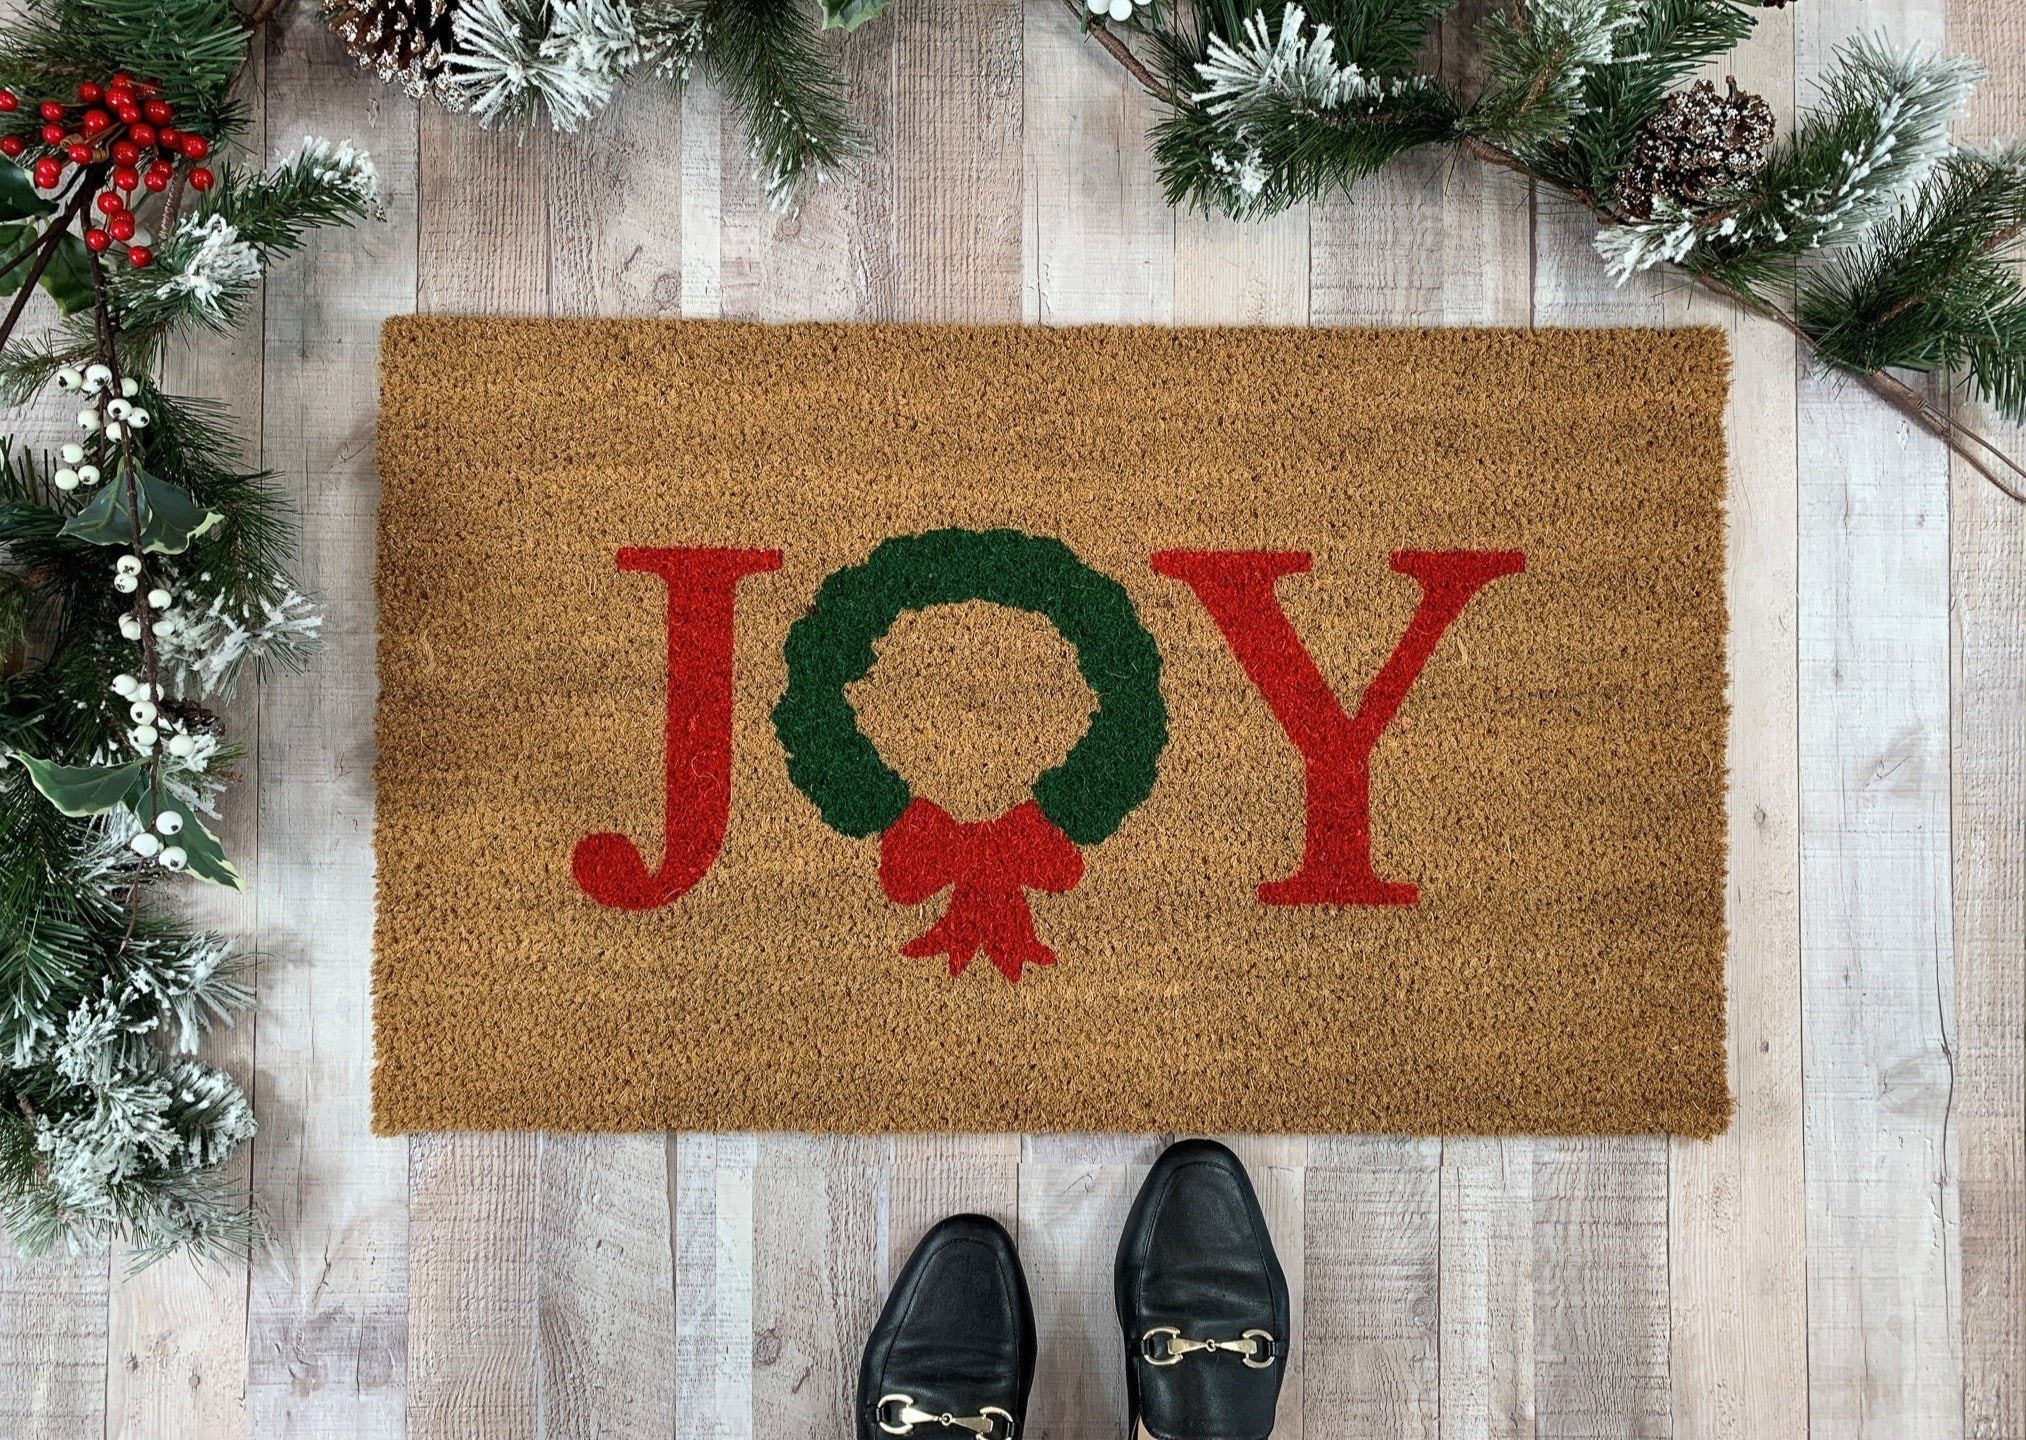 Peace and Joy Winter Doormat, Christmas Door Decor